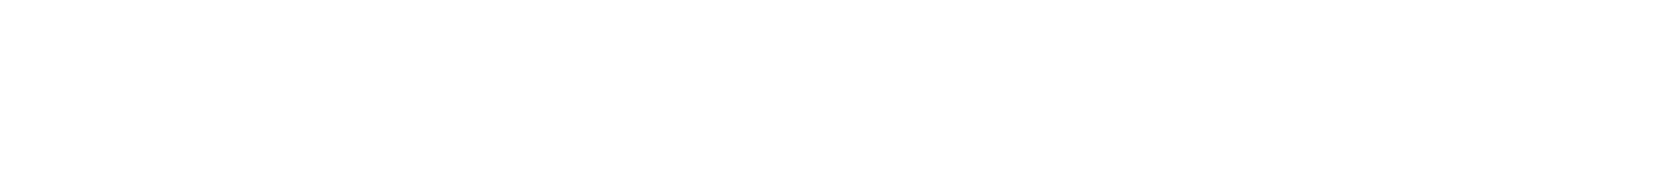 AF-S VR Micro-Nikkor 105mm f/2.8G IF-ED